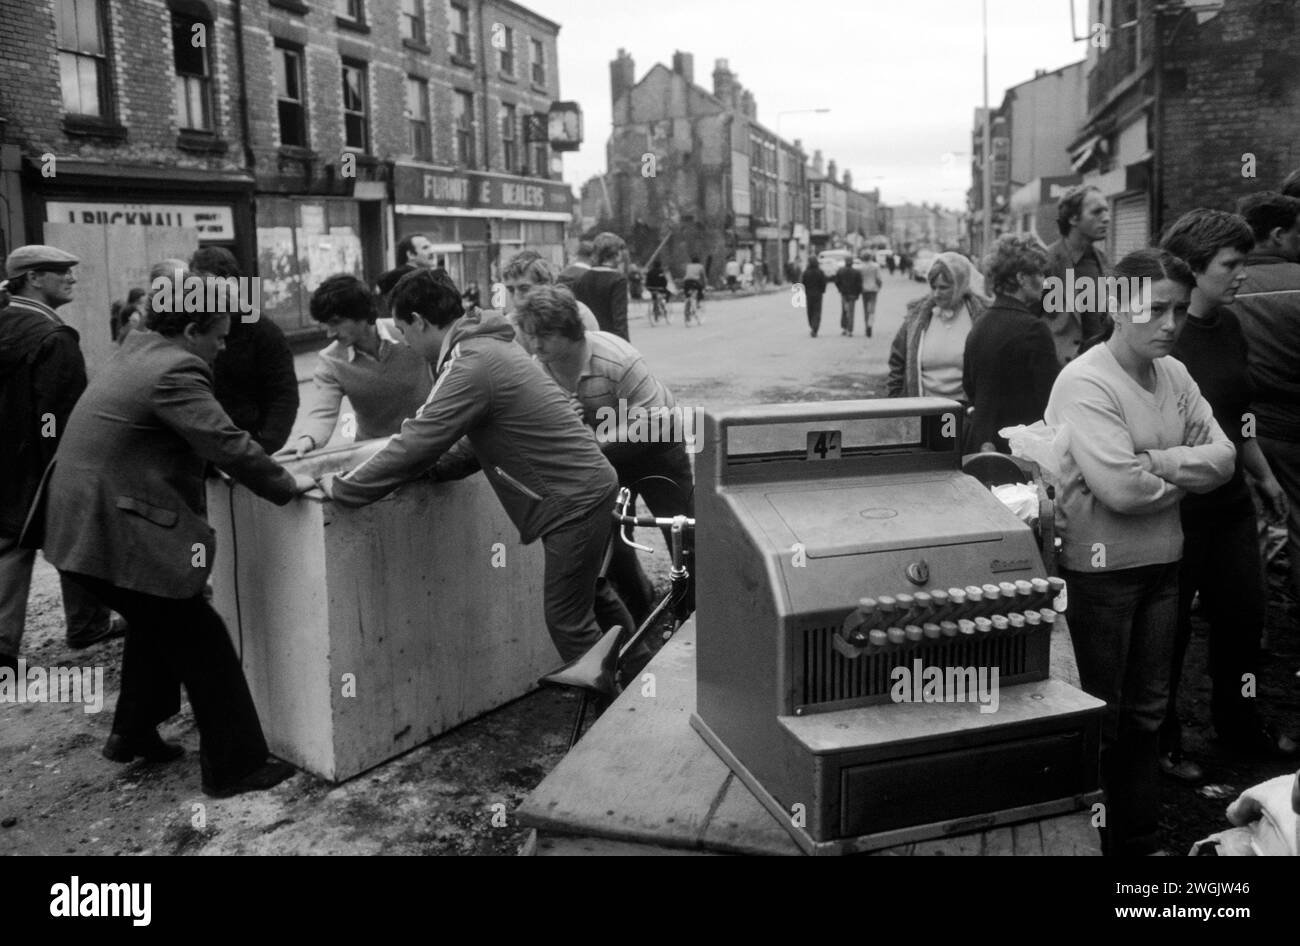 Émeutes de Toxteth, Liverpool, Angleterre juillet 1981. Le matin après la nuit des émeutes, les hommes locaux s'aidant eux-mêmes au contenu d'une boutique Burn out. Ils pillent. Un magasin Keepers Till, avec le panneau 4 shillings, les résidents locaux sont contrariés par ce qui est arrivé à leur quartier. 1980S UK> HOMER SYKES Banque D'Images